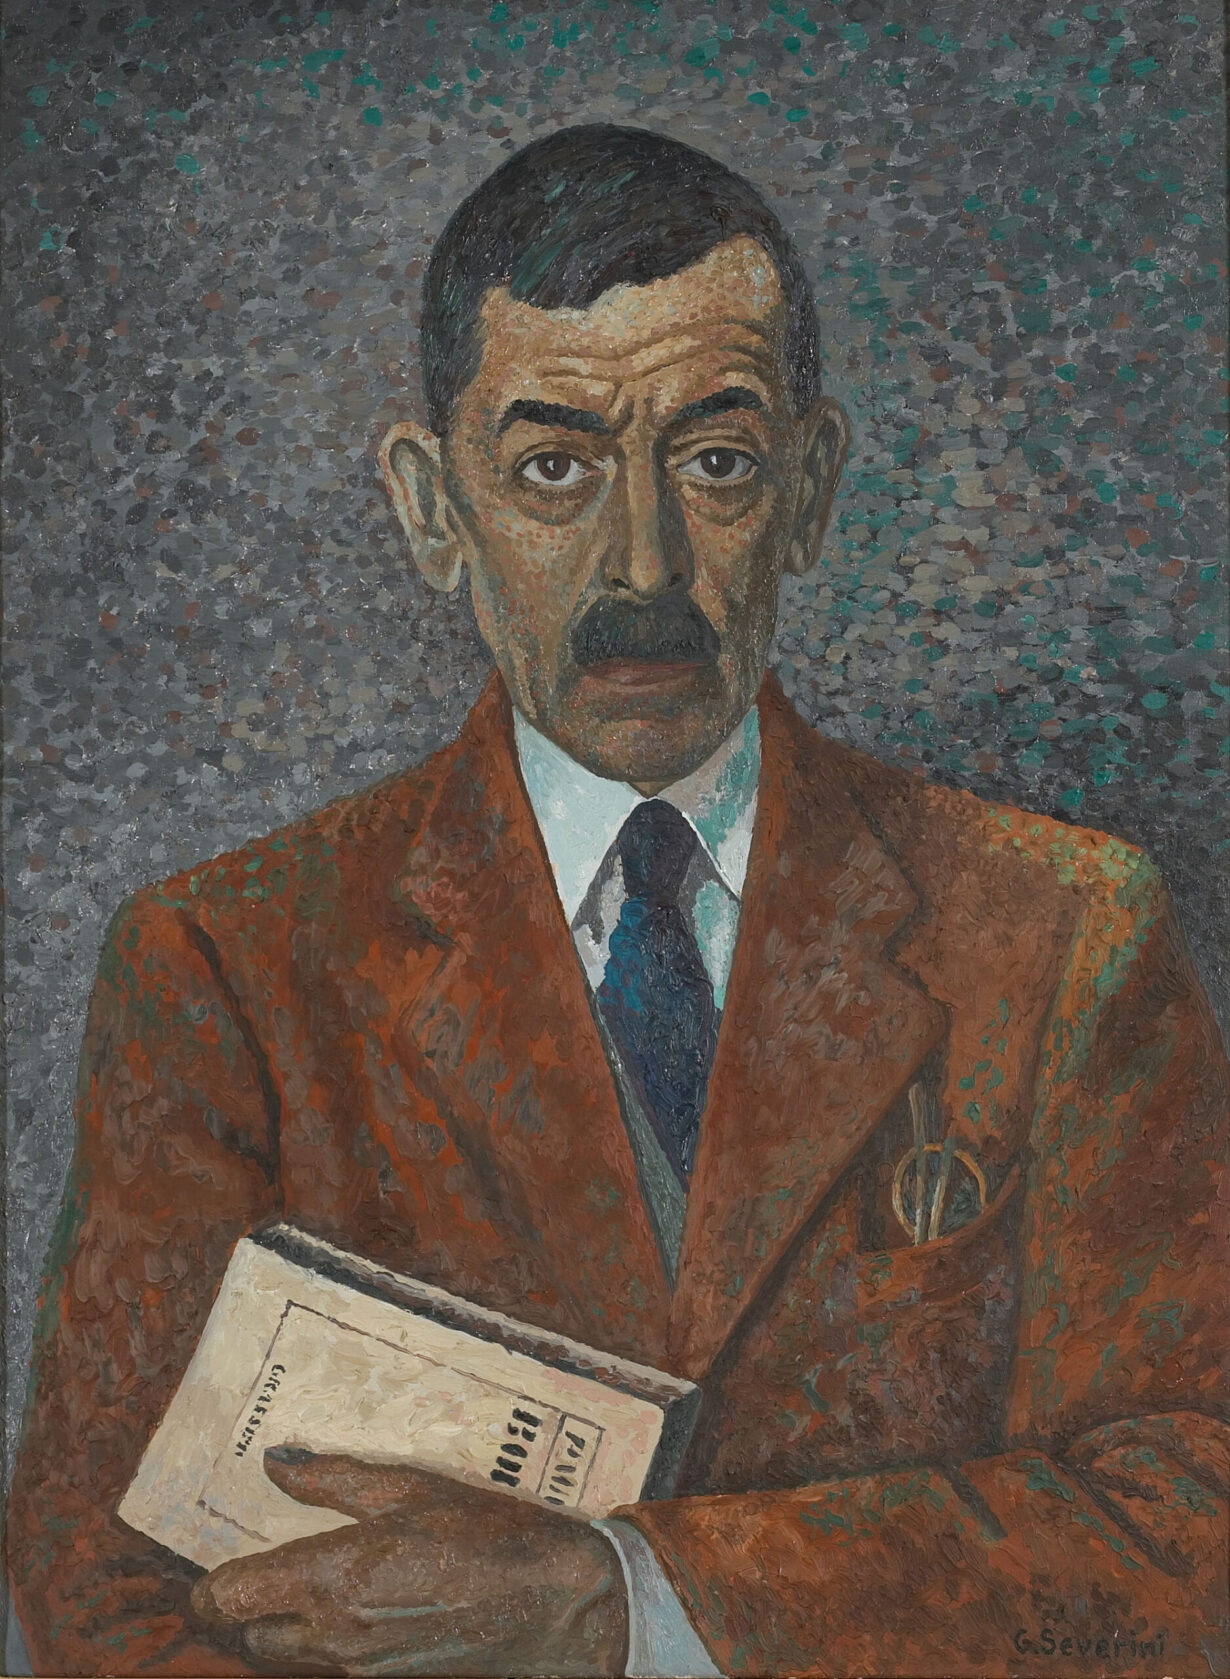 La peinture représente Ramuz, vu en buste, portant un costume couleur rouille. Il a un livre à la main et regarde le spectateur.